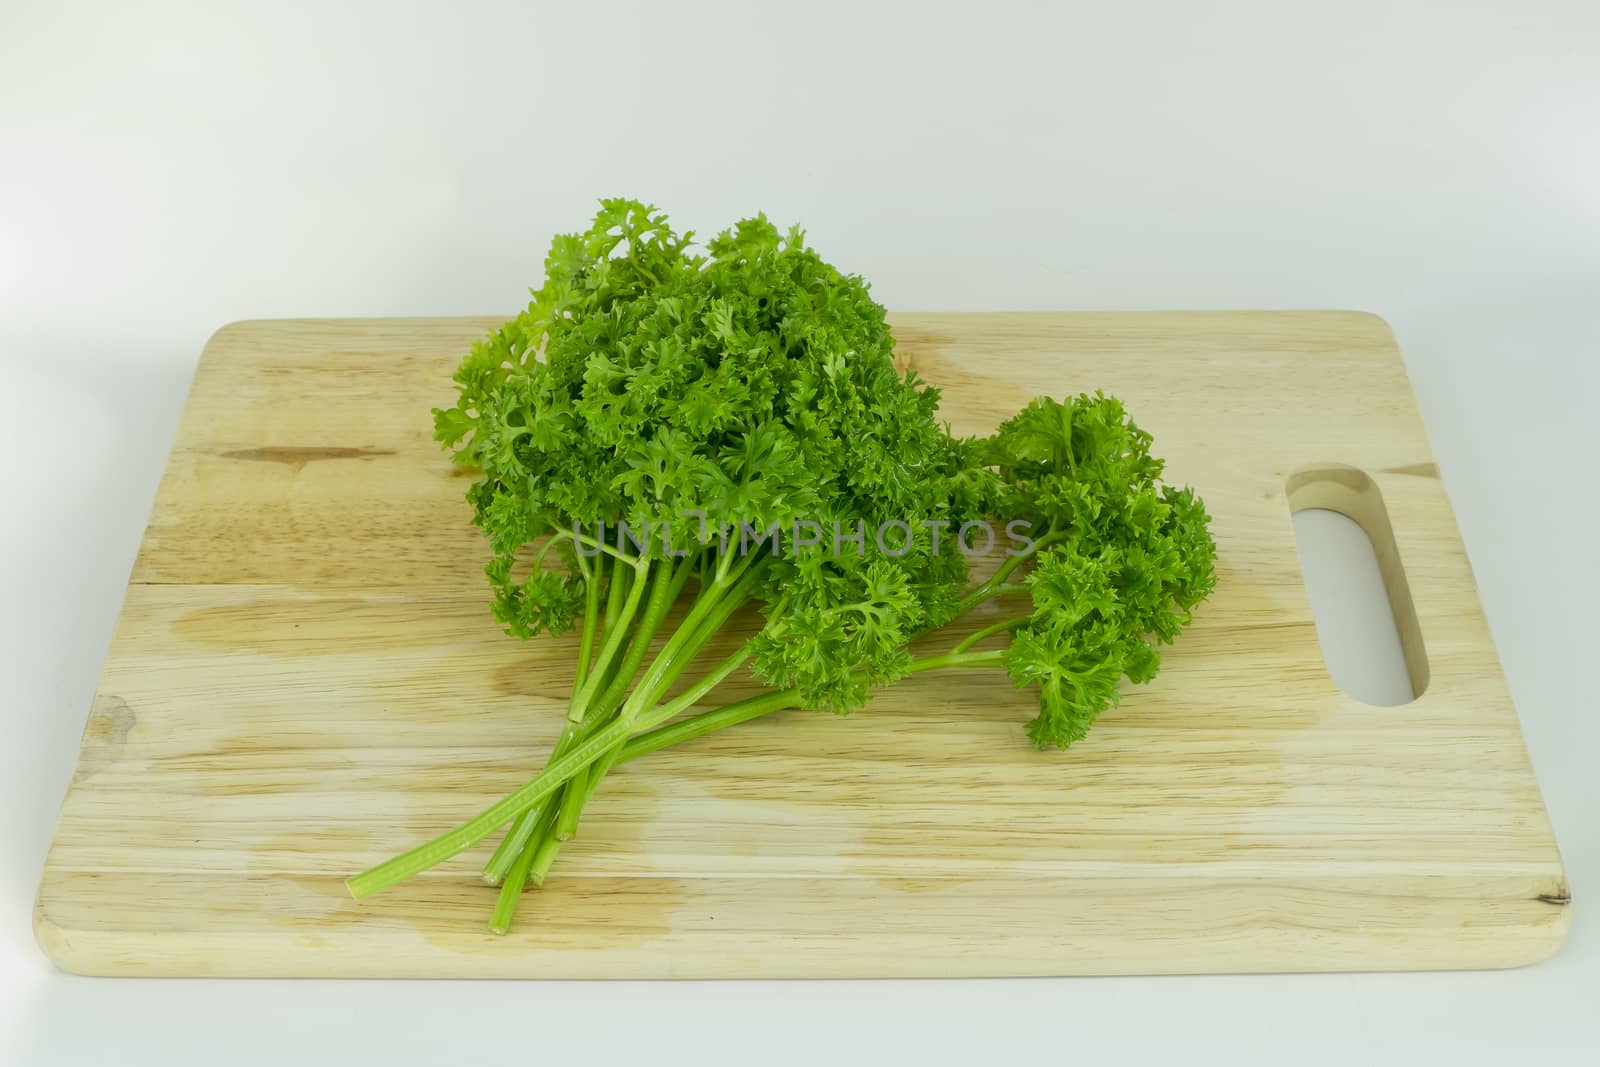 parsley on cutting board by art9858